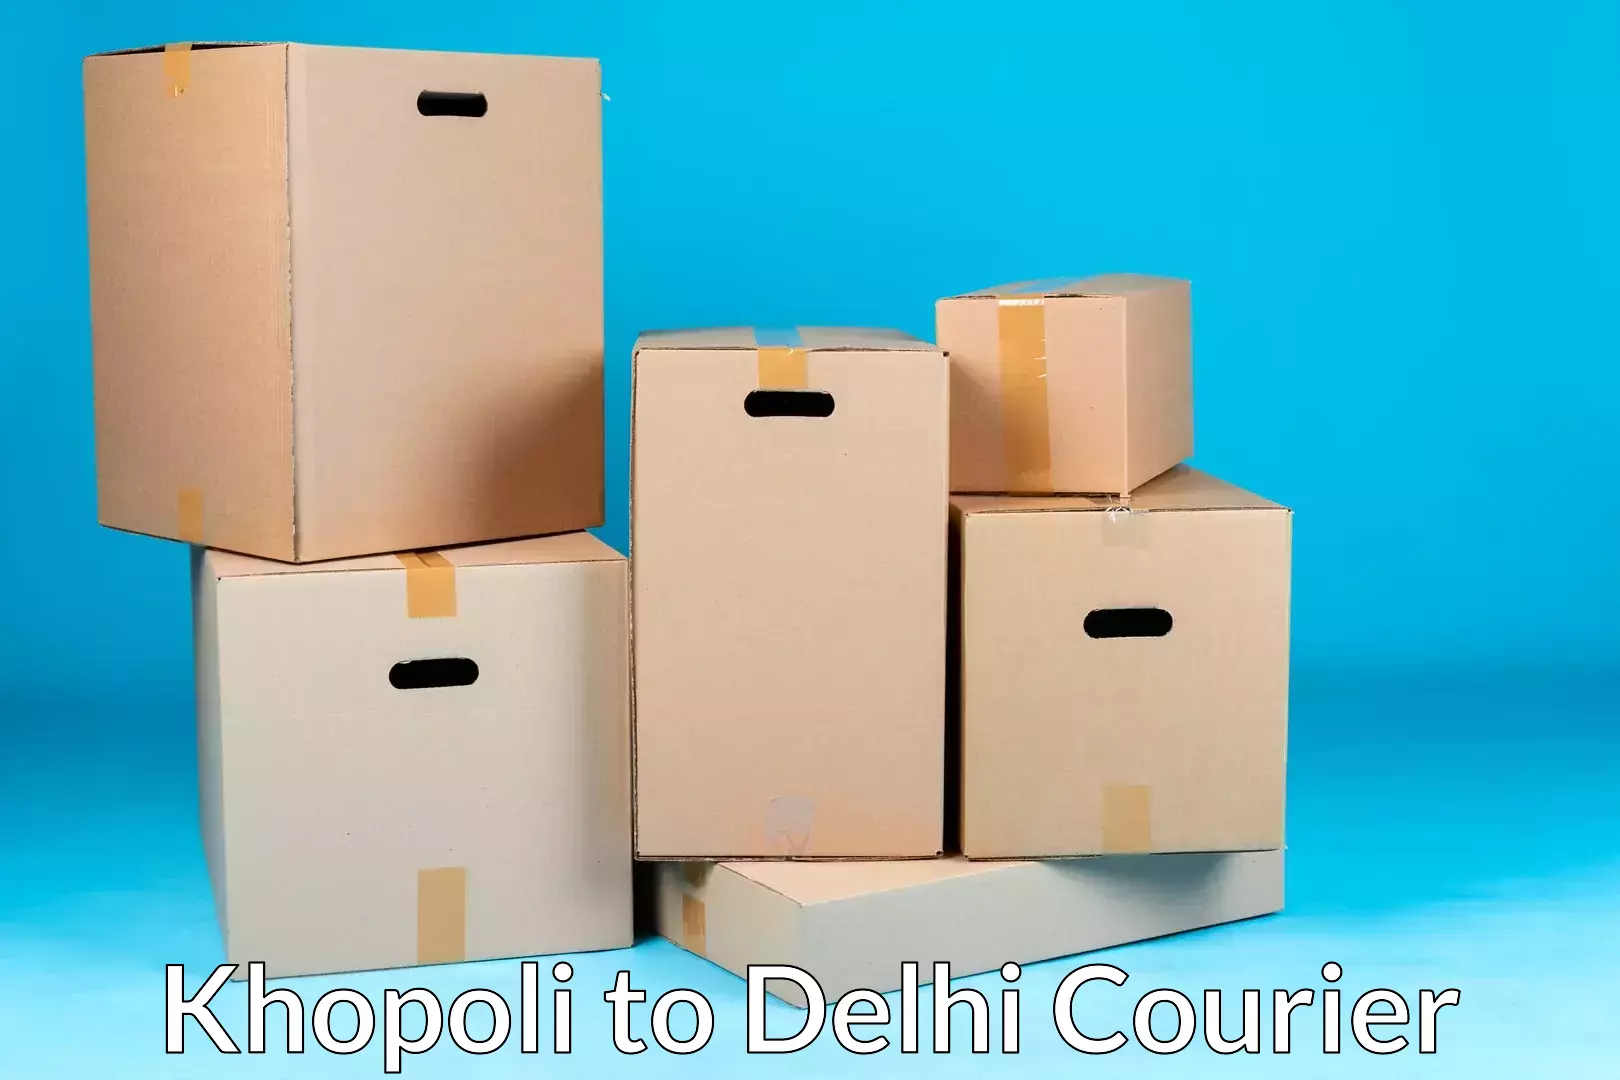 Premium moving services in Khopoli to Delhi